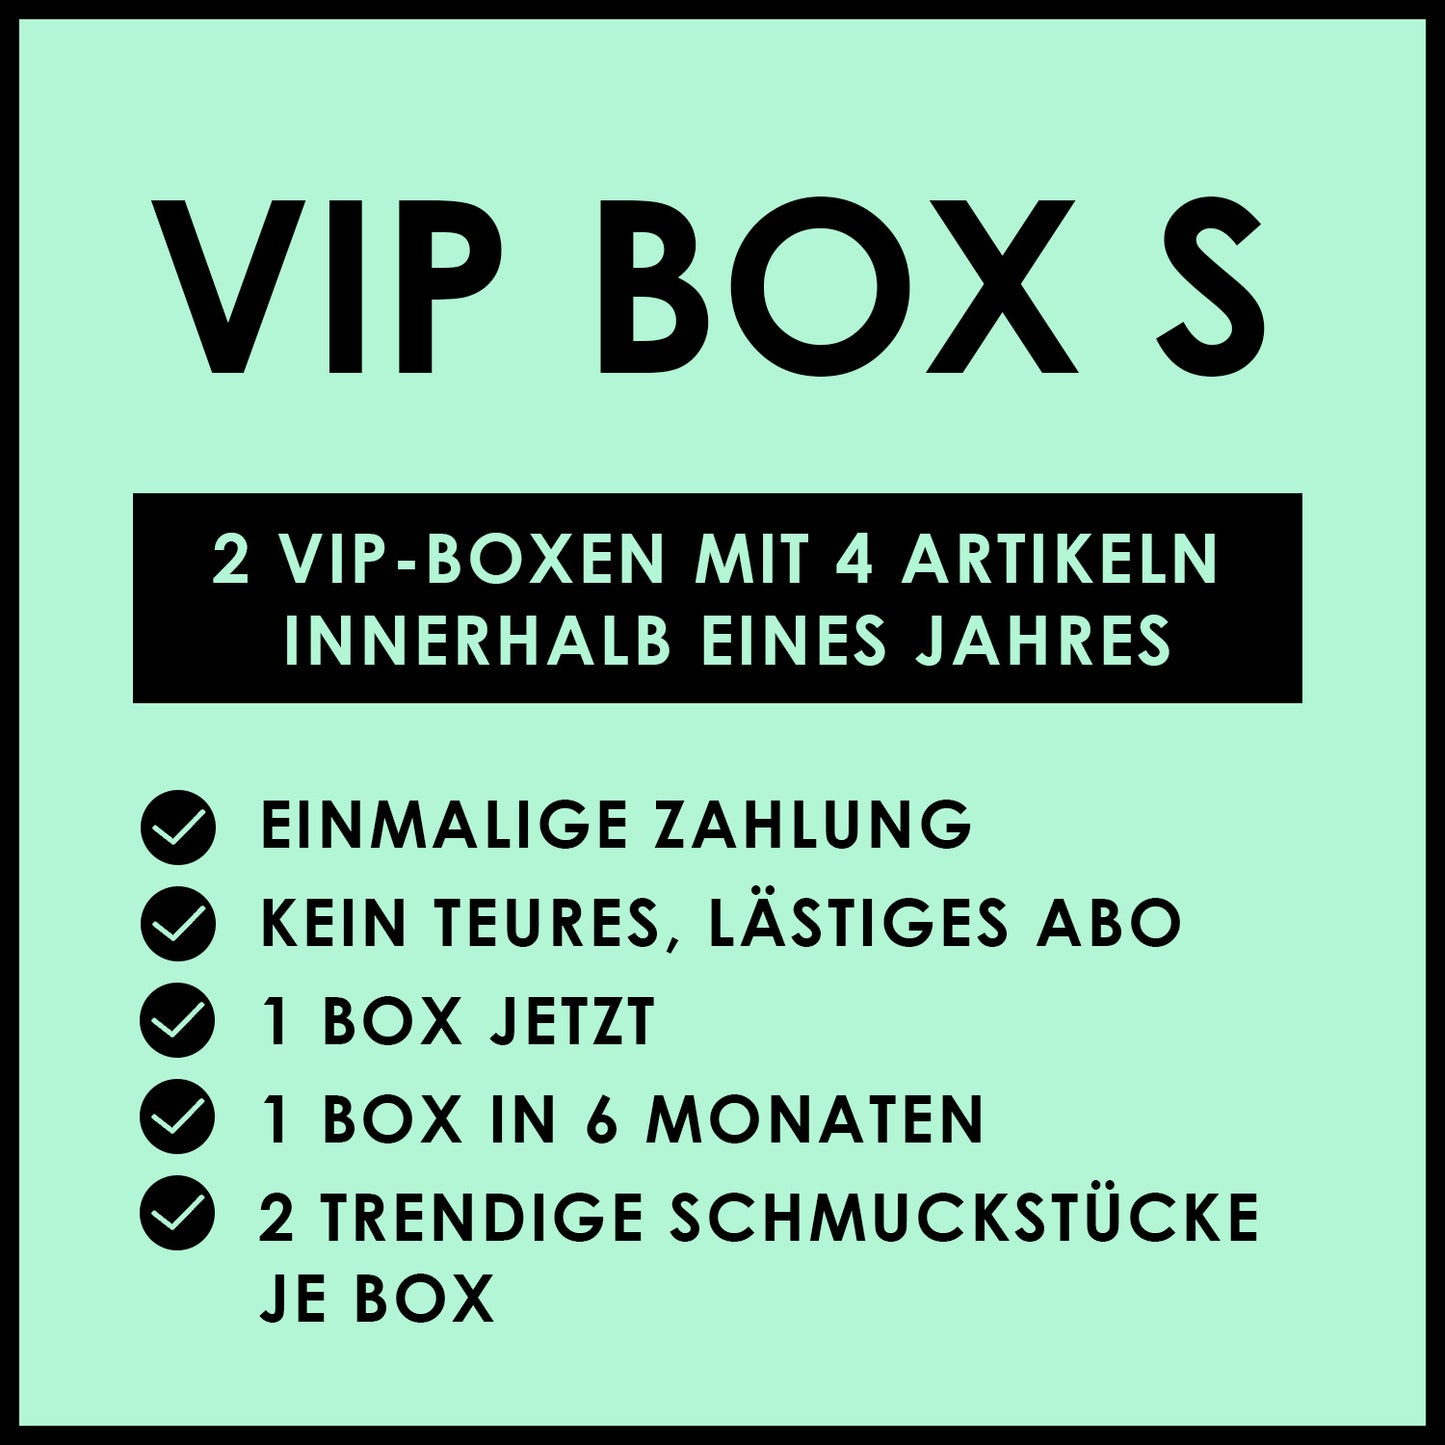 VIP BOX S WOMEN